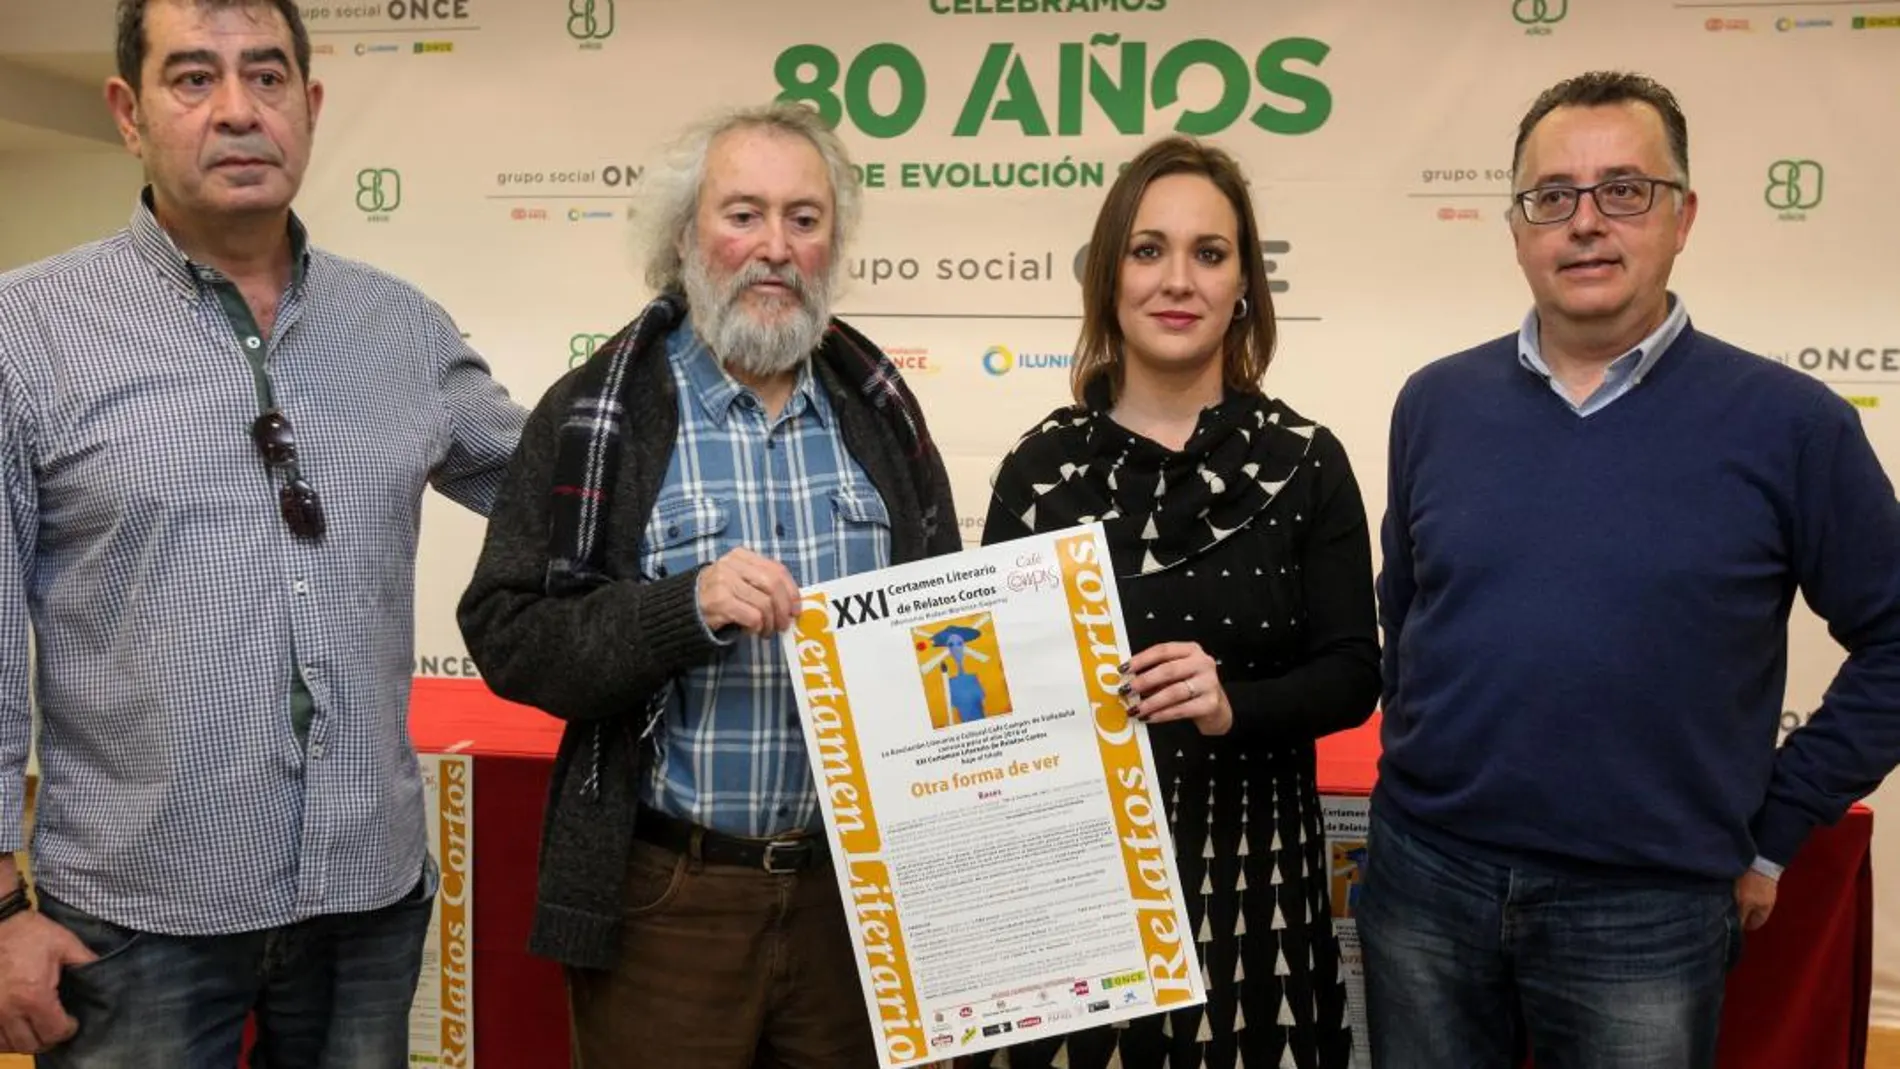 Arancha Casado, de la ONCE, junto a Óscar Domínguez, coordinador del concurso, y Daniel Carrascal, ilustrador del cartel del certamen, entre otros